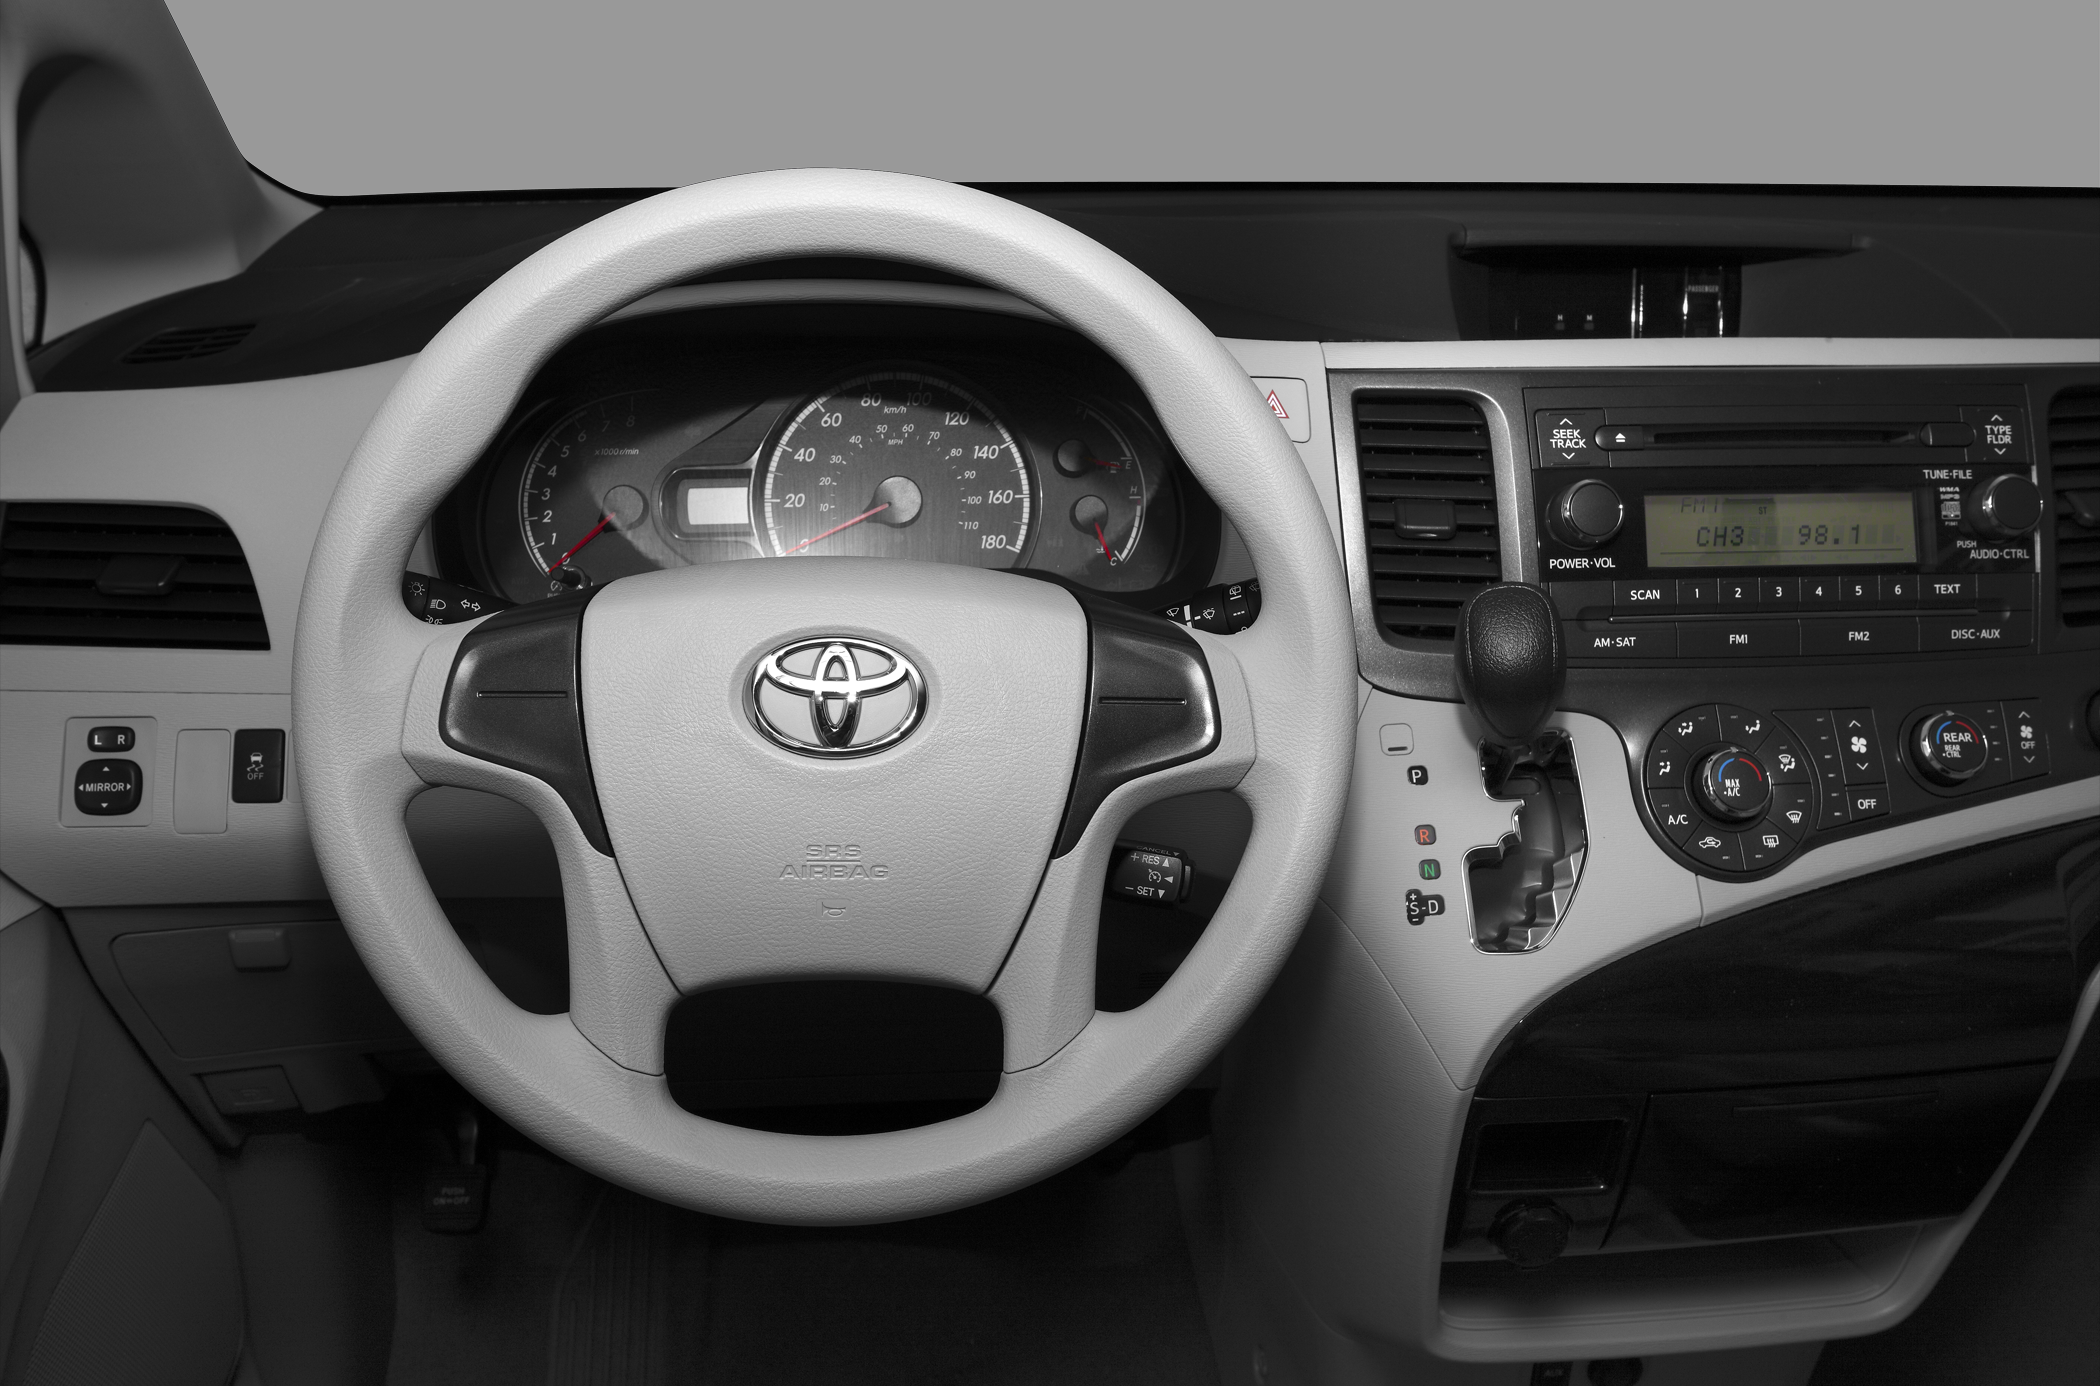 2011 Toyota Sienna